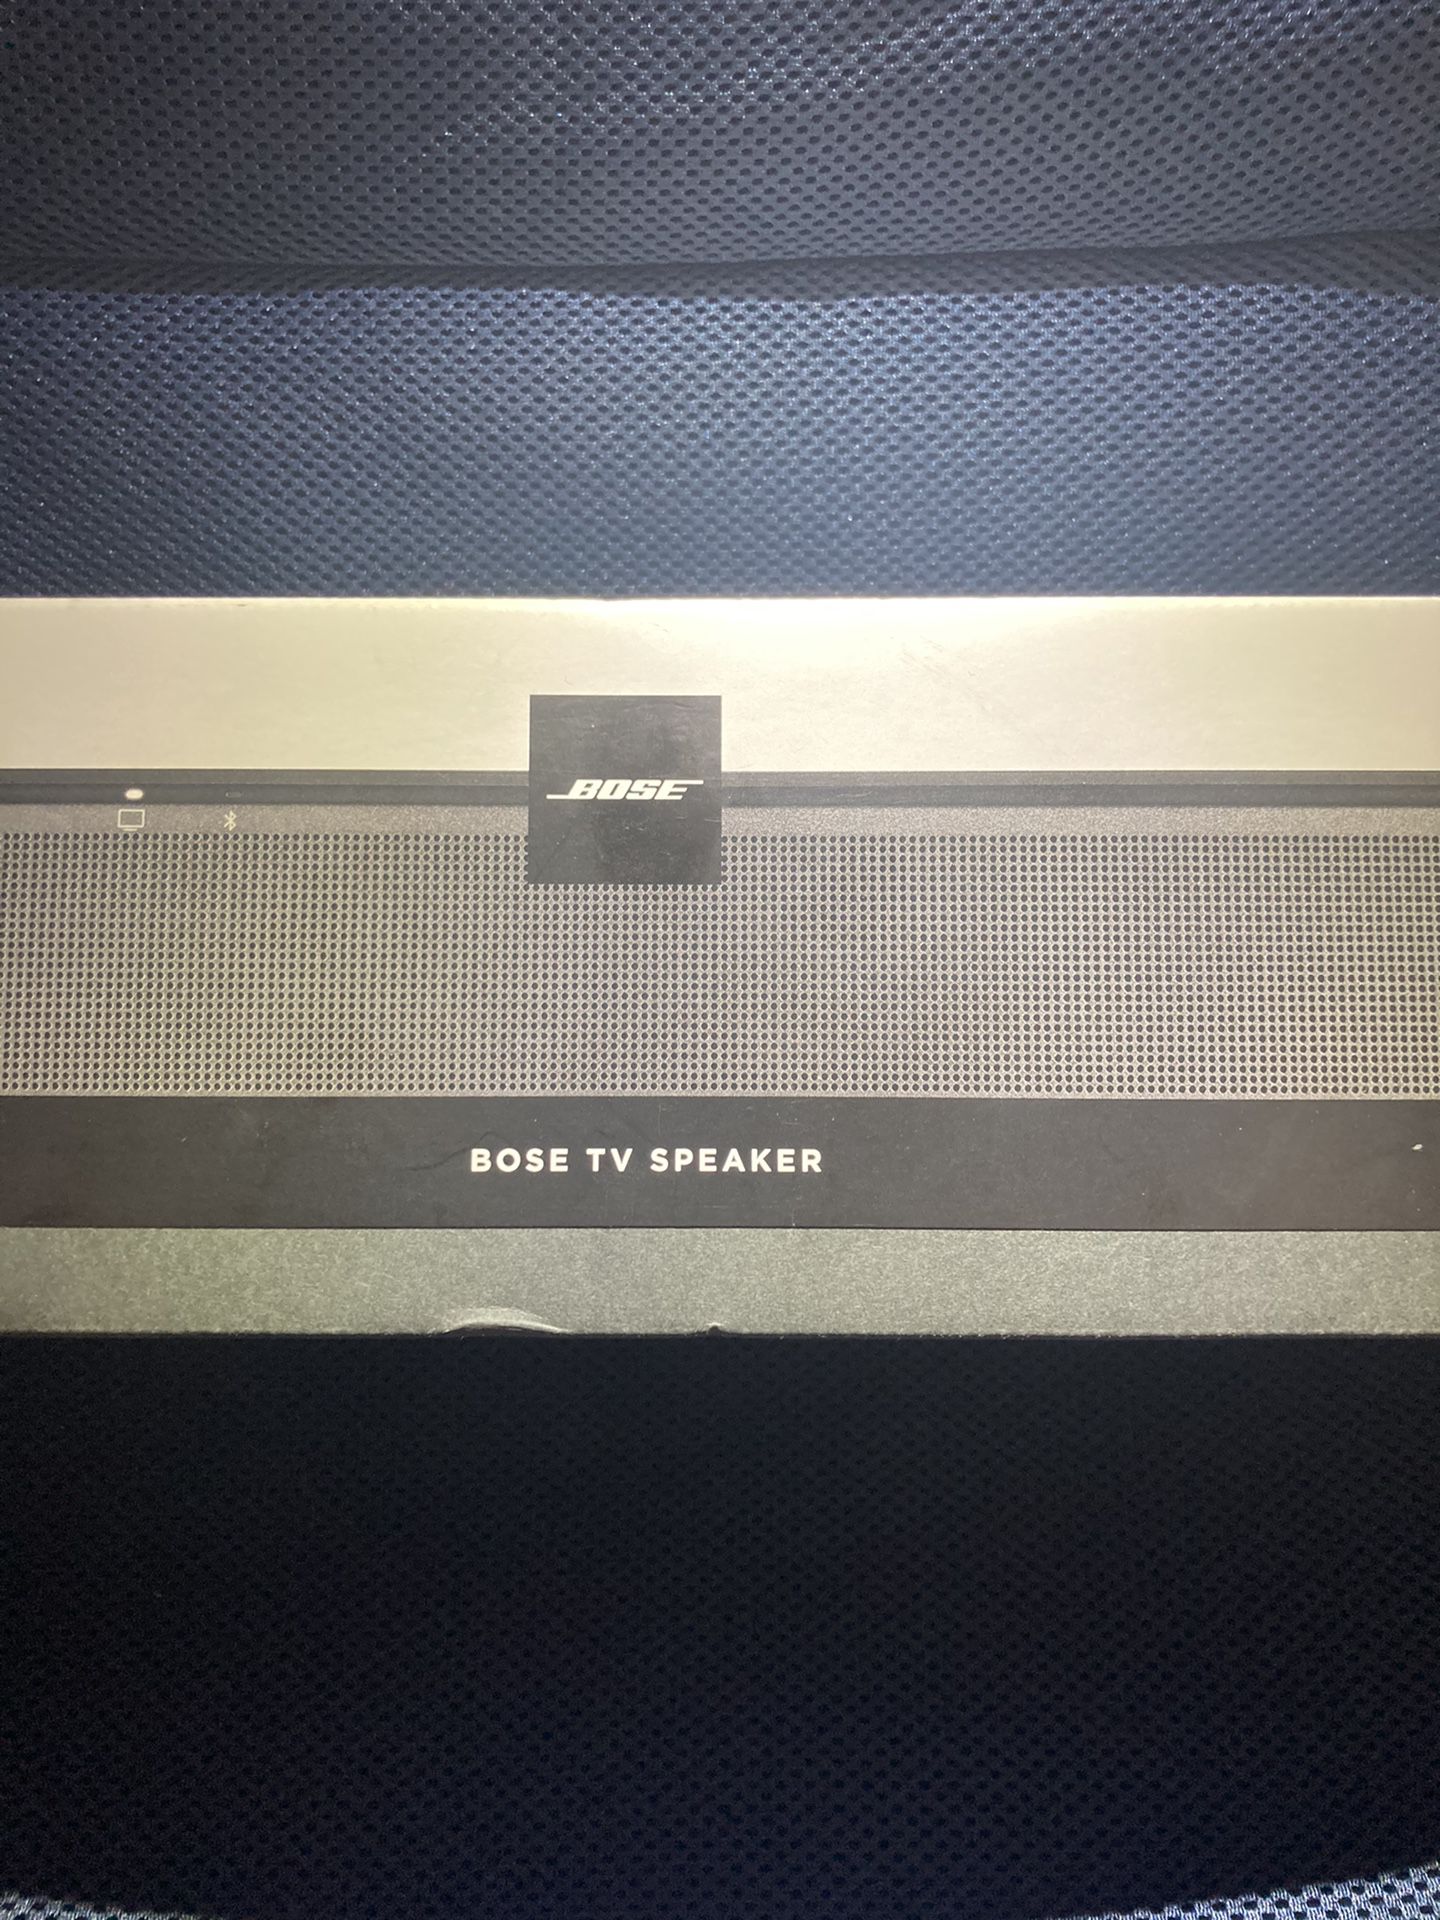 Brand NEW// FACTORY SEALED Bose TV Speaker